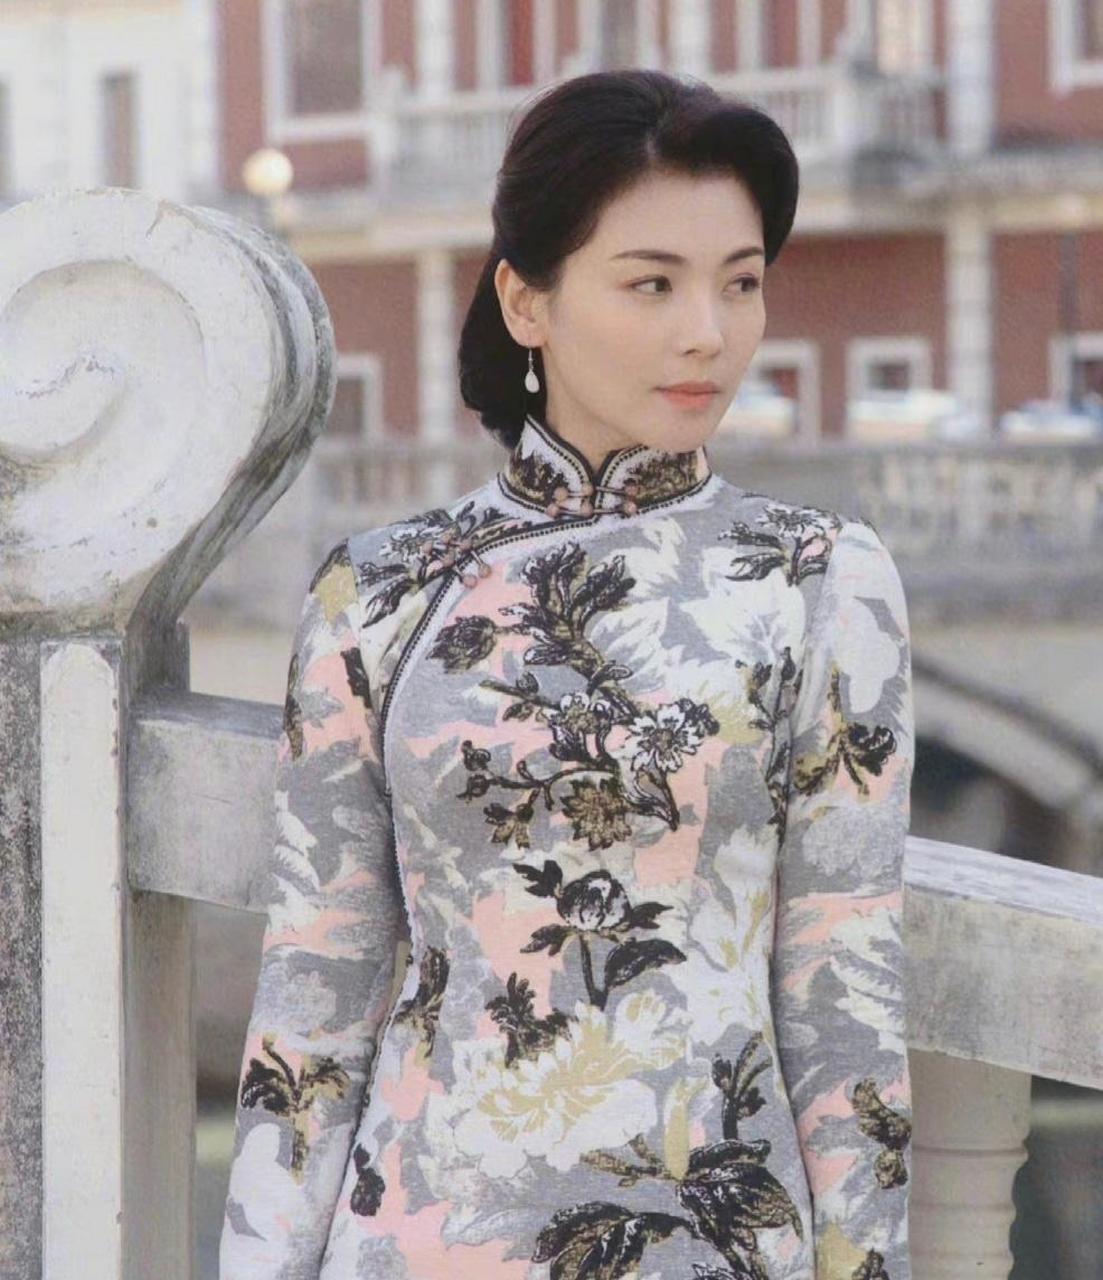 网友:刘涛穿着旗袍,尽显魅力